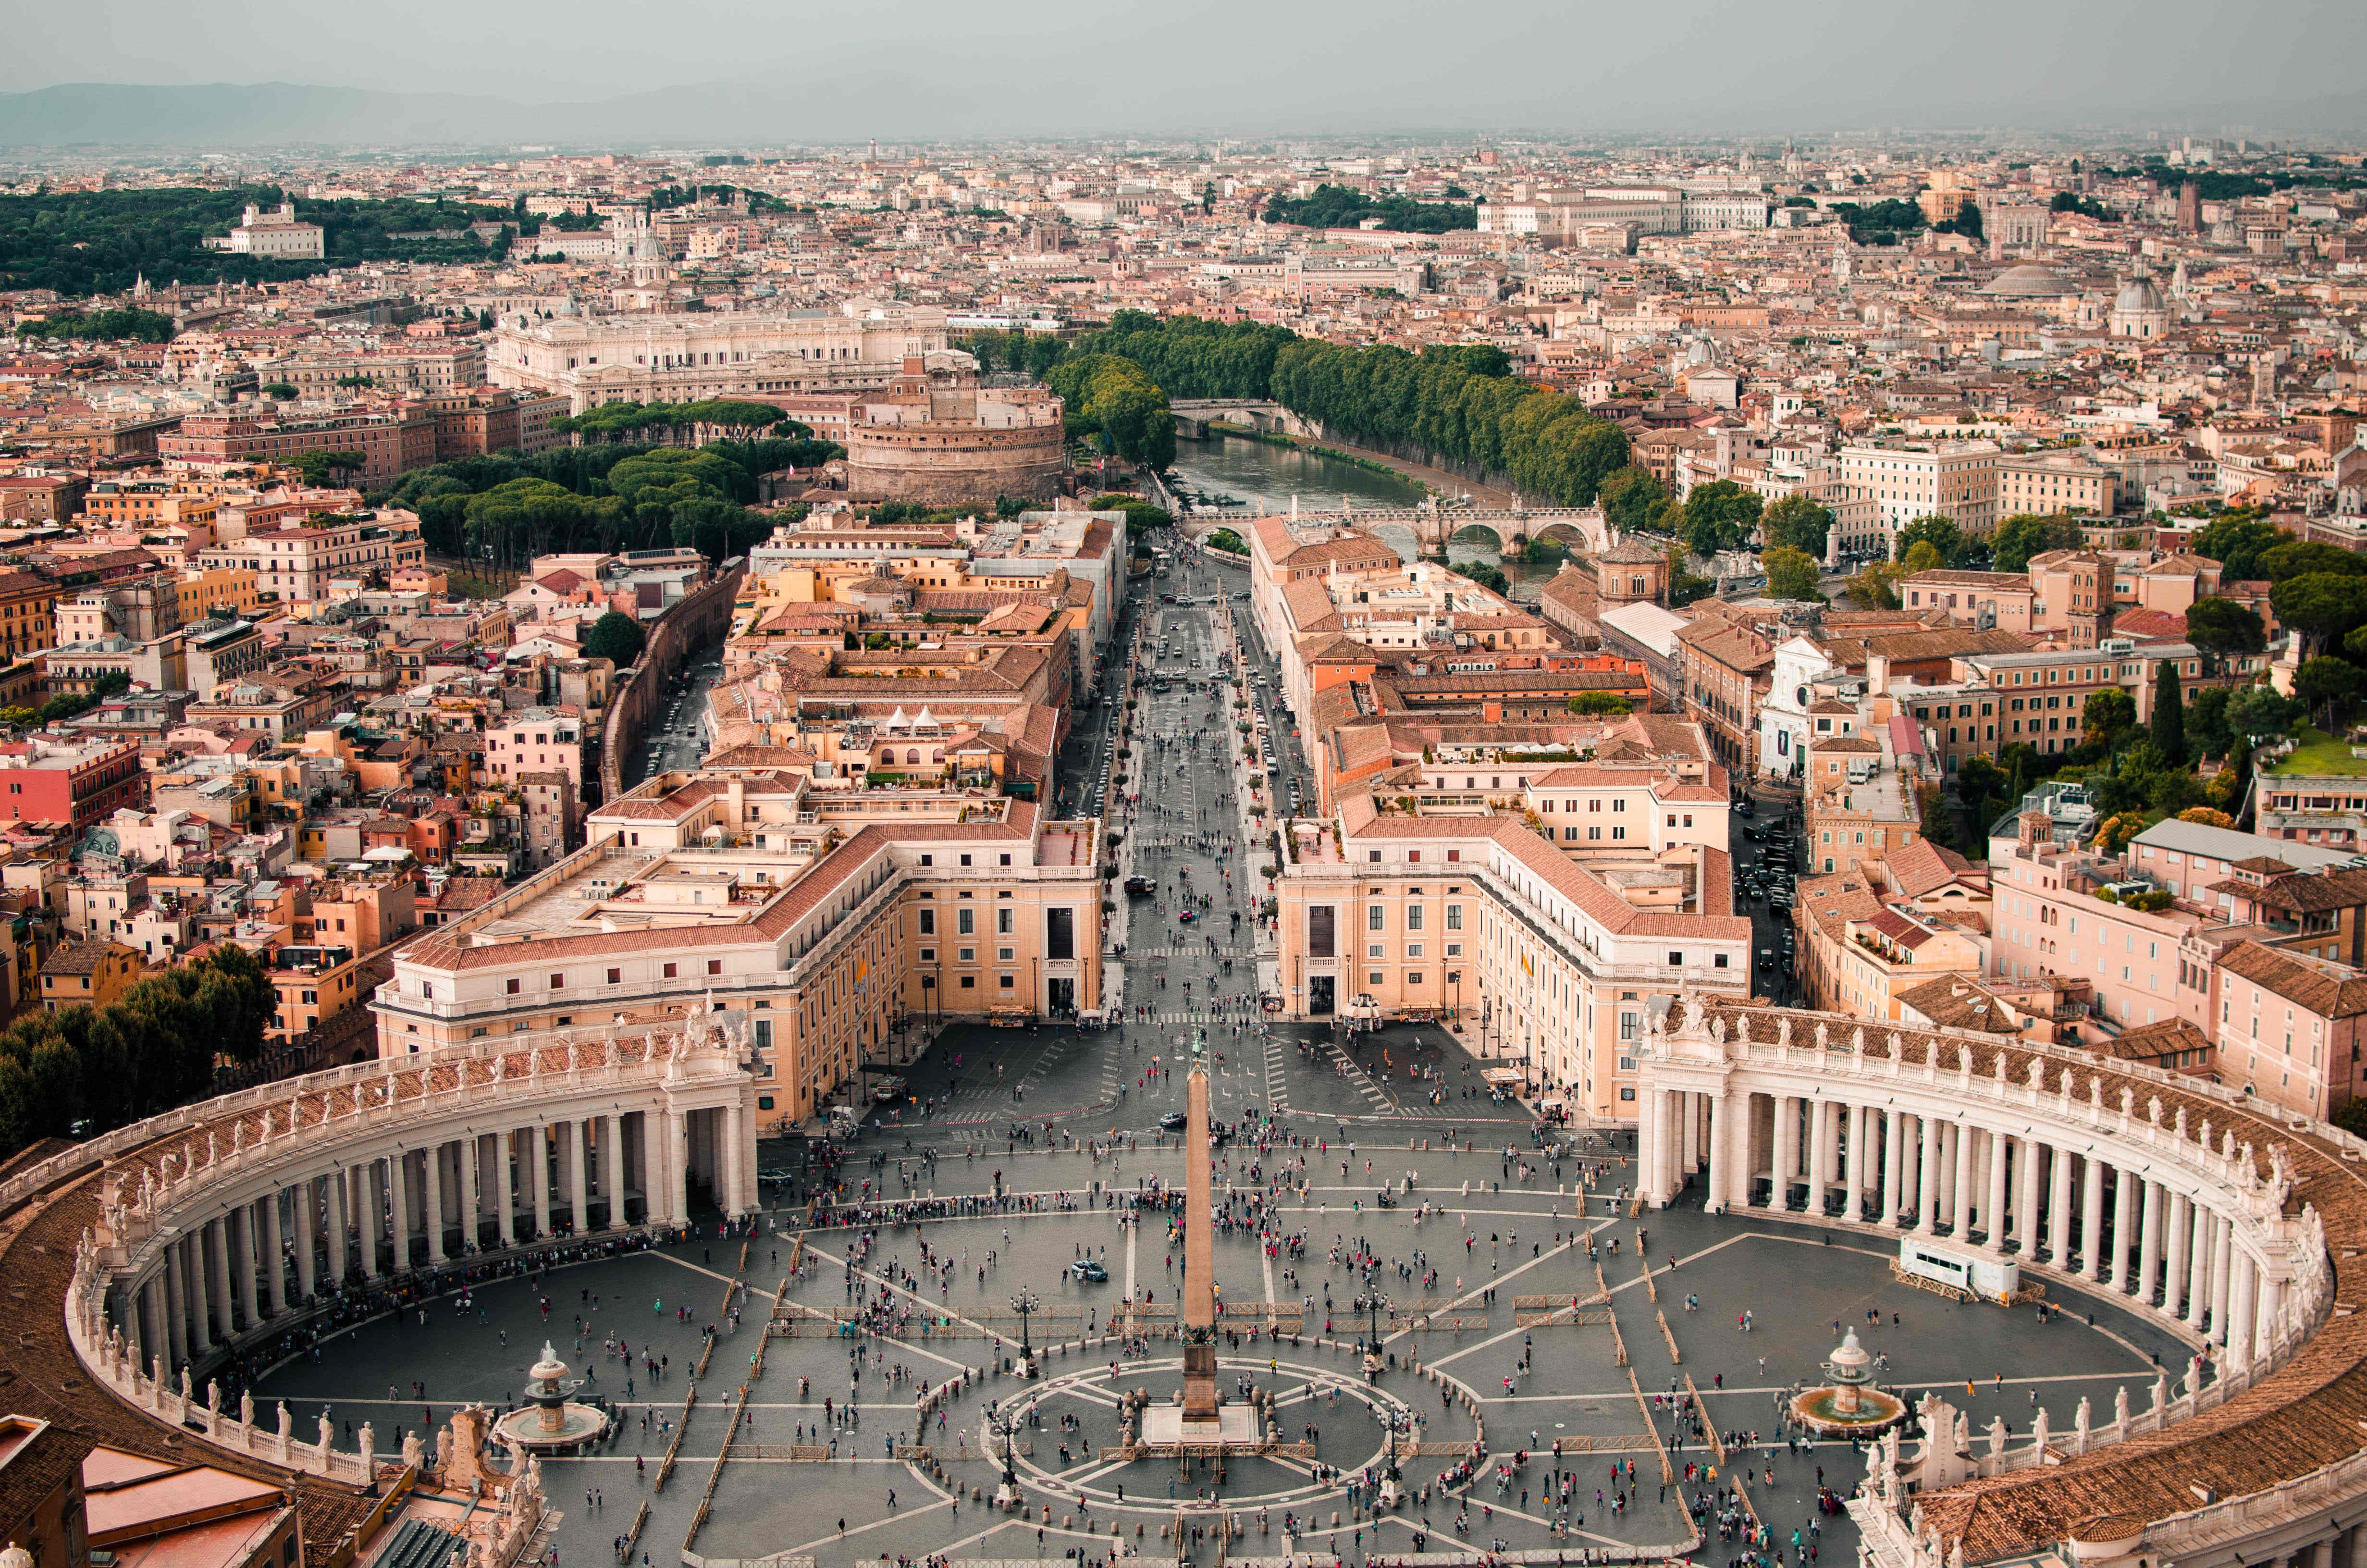 另外来到罗马,非常建议顺道去一趟于罗马的国中之国——梵蒂冈,梵蒂冈